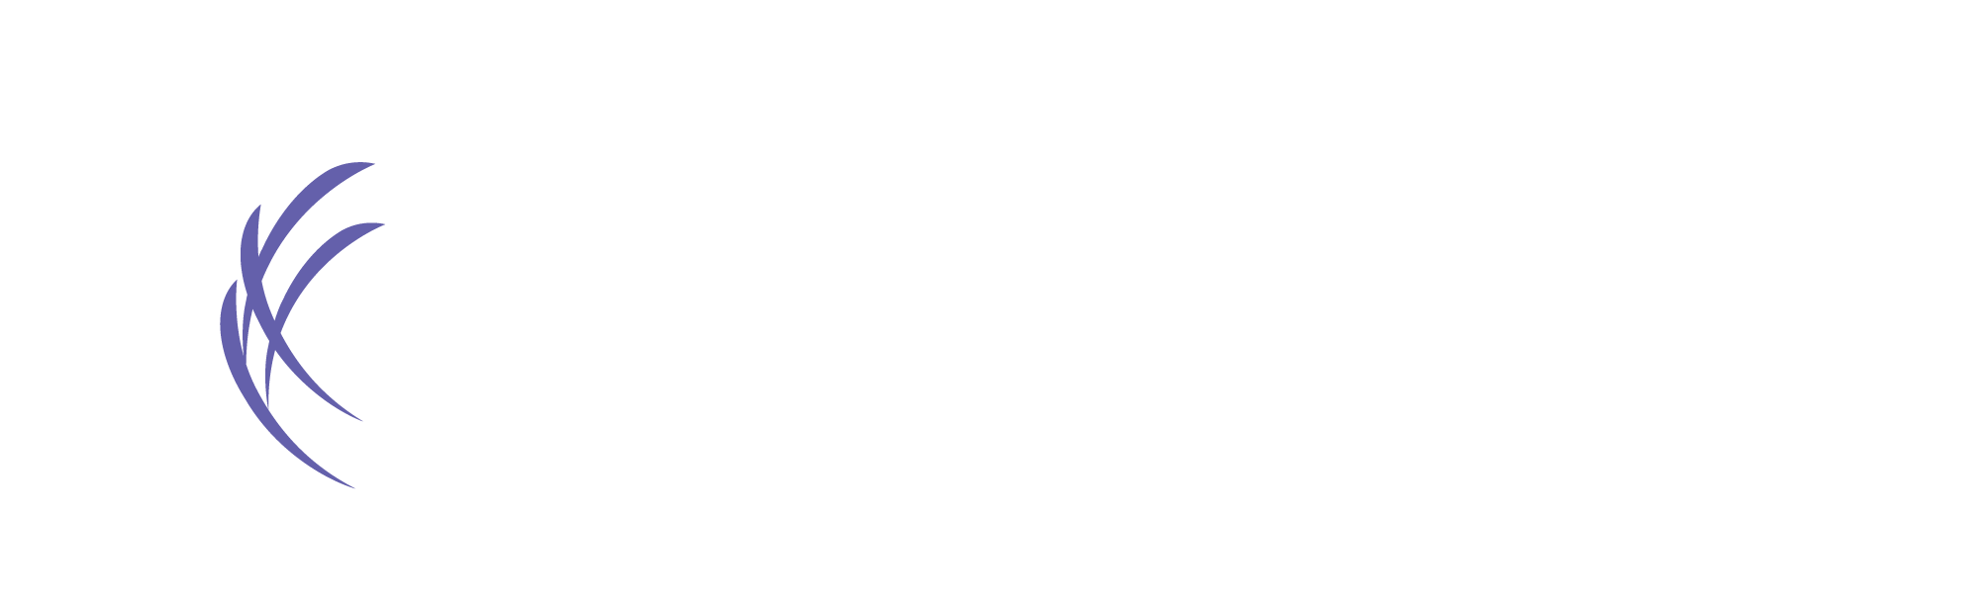 Kaptivate logo image